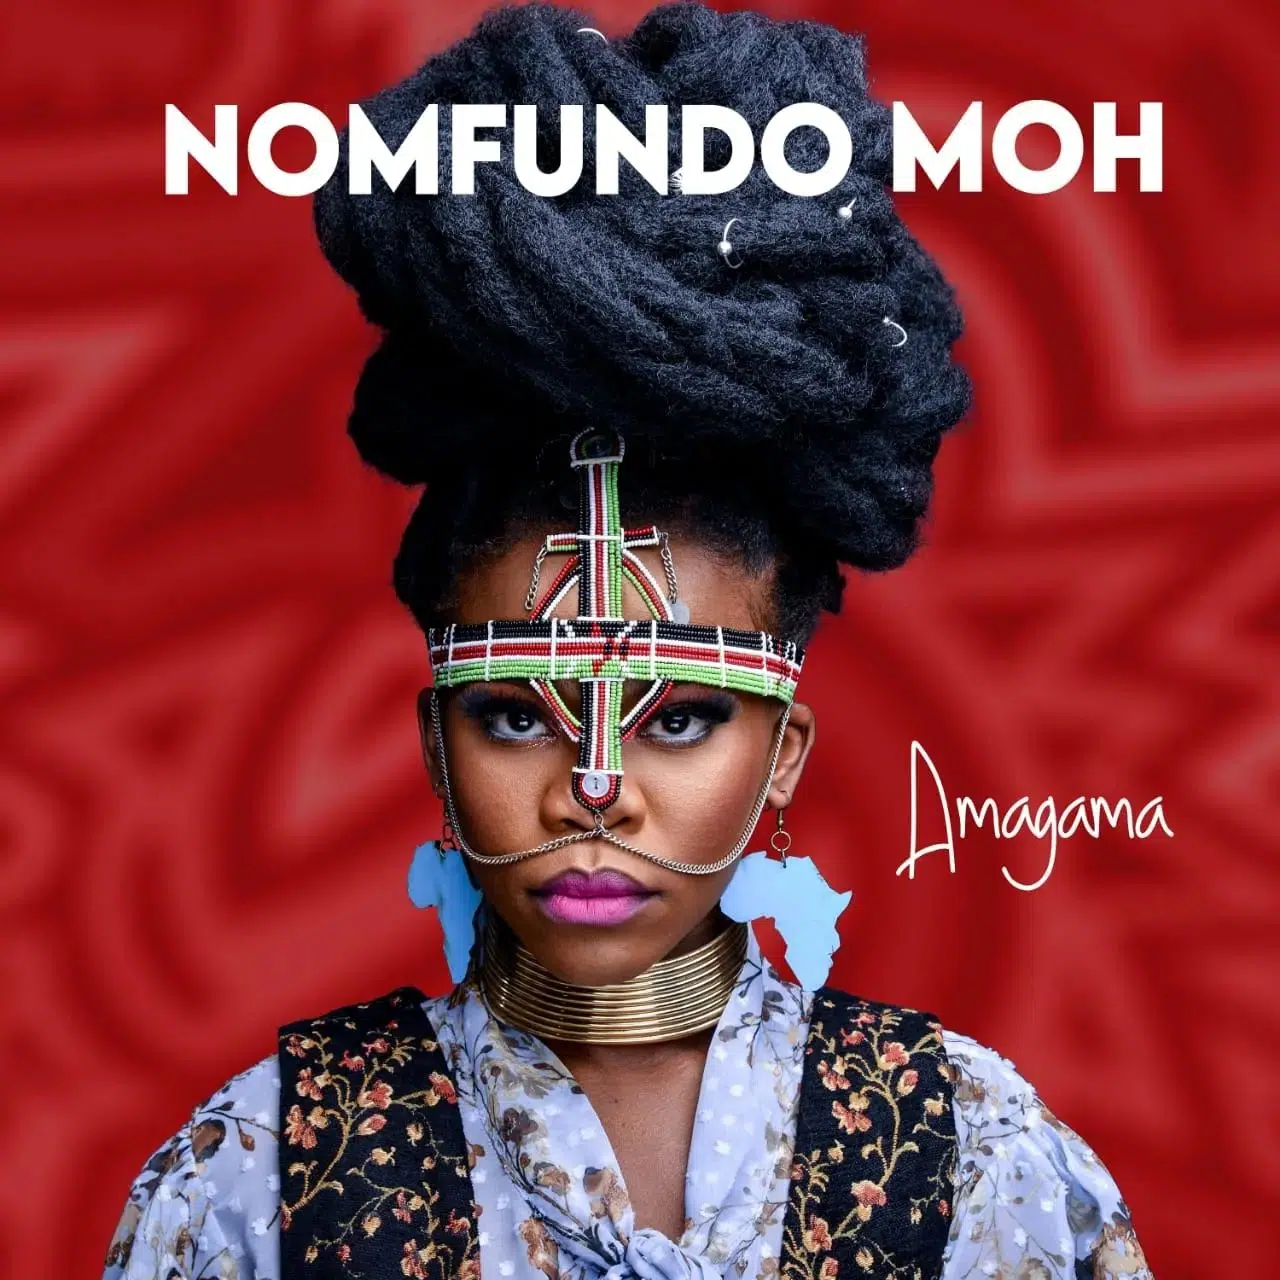 DOWNLOAD ALBUM: Nomfundo Moh – “Amagama” | Full Album